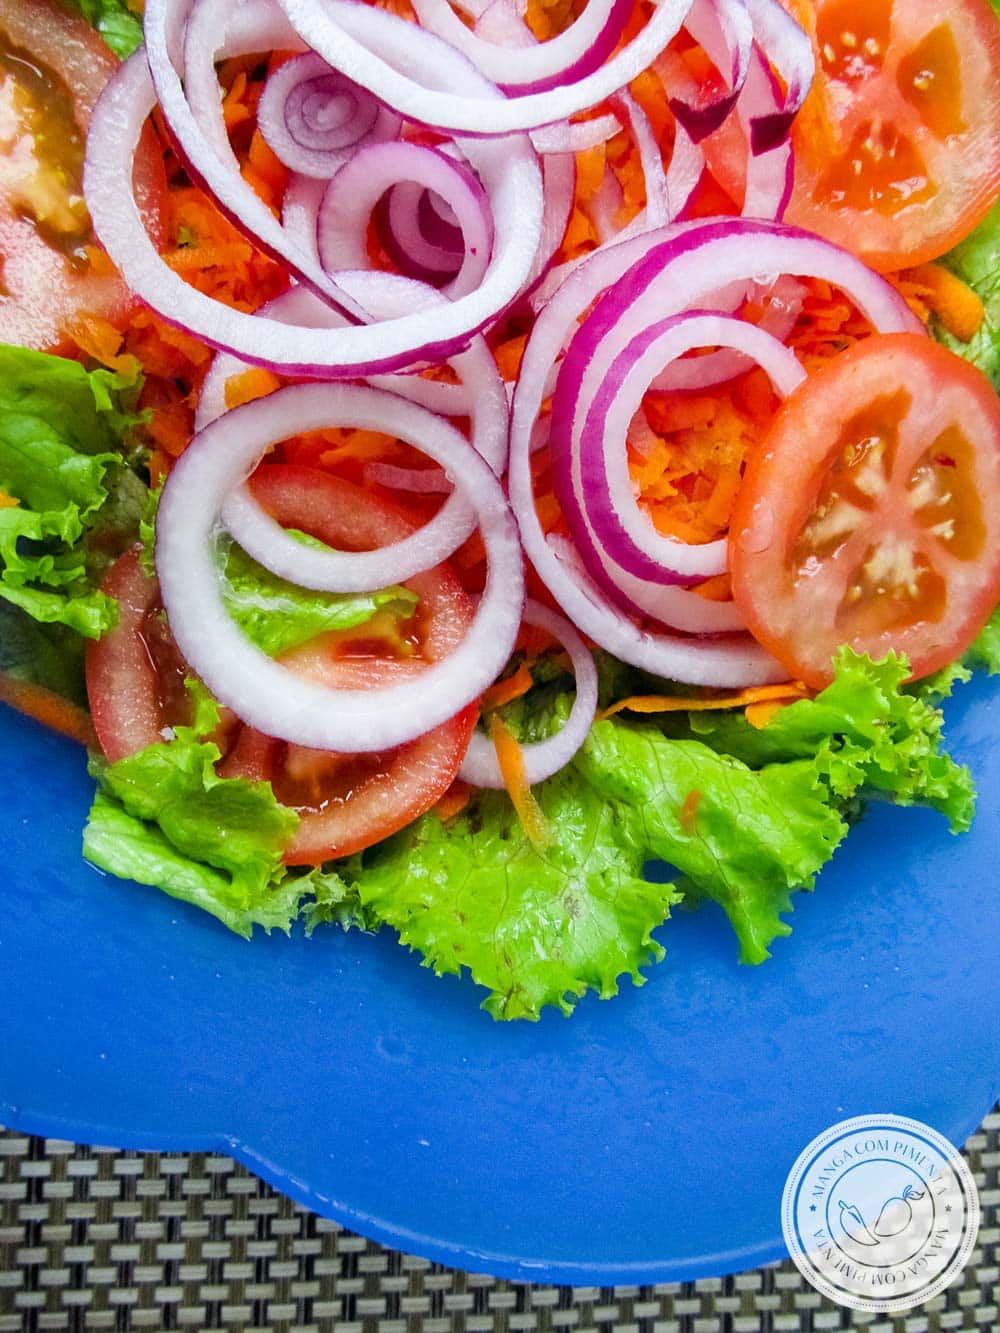 Comer salada é vida - use e abuse todos os dias e confira os nutrientes que vão fazer bem para você!!